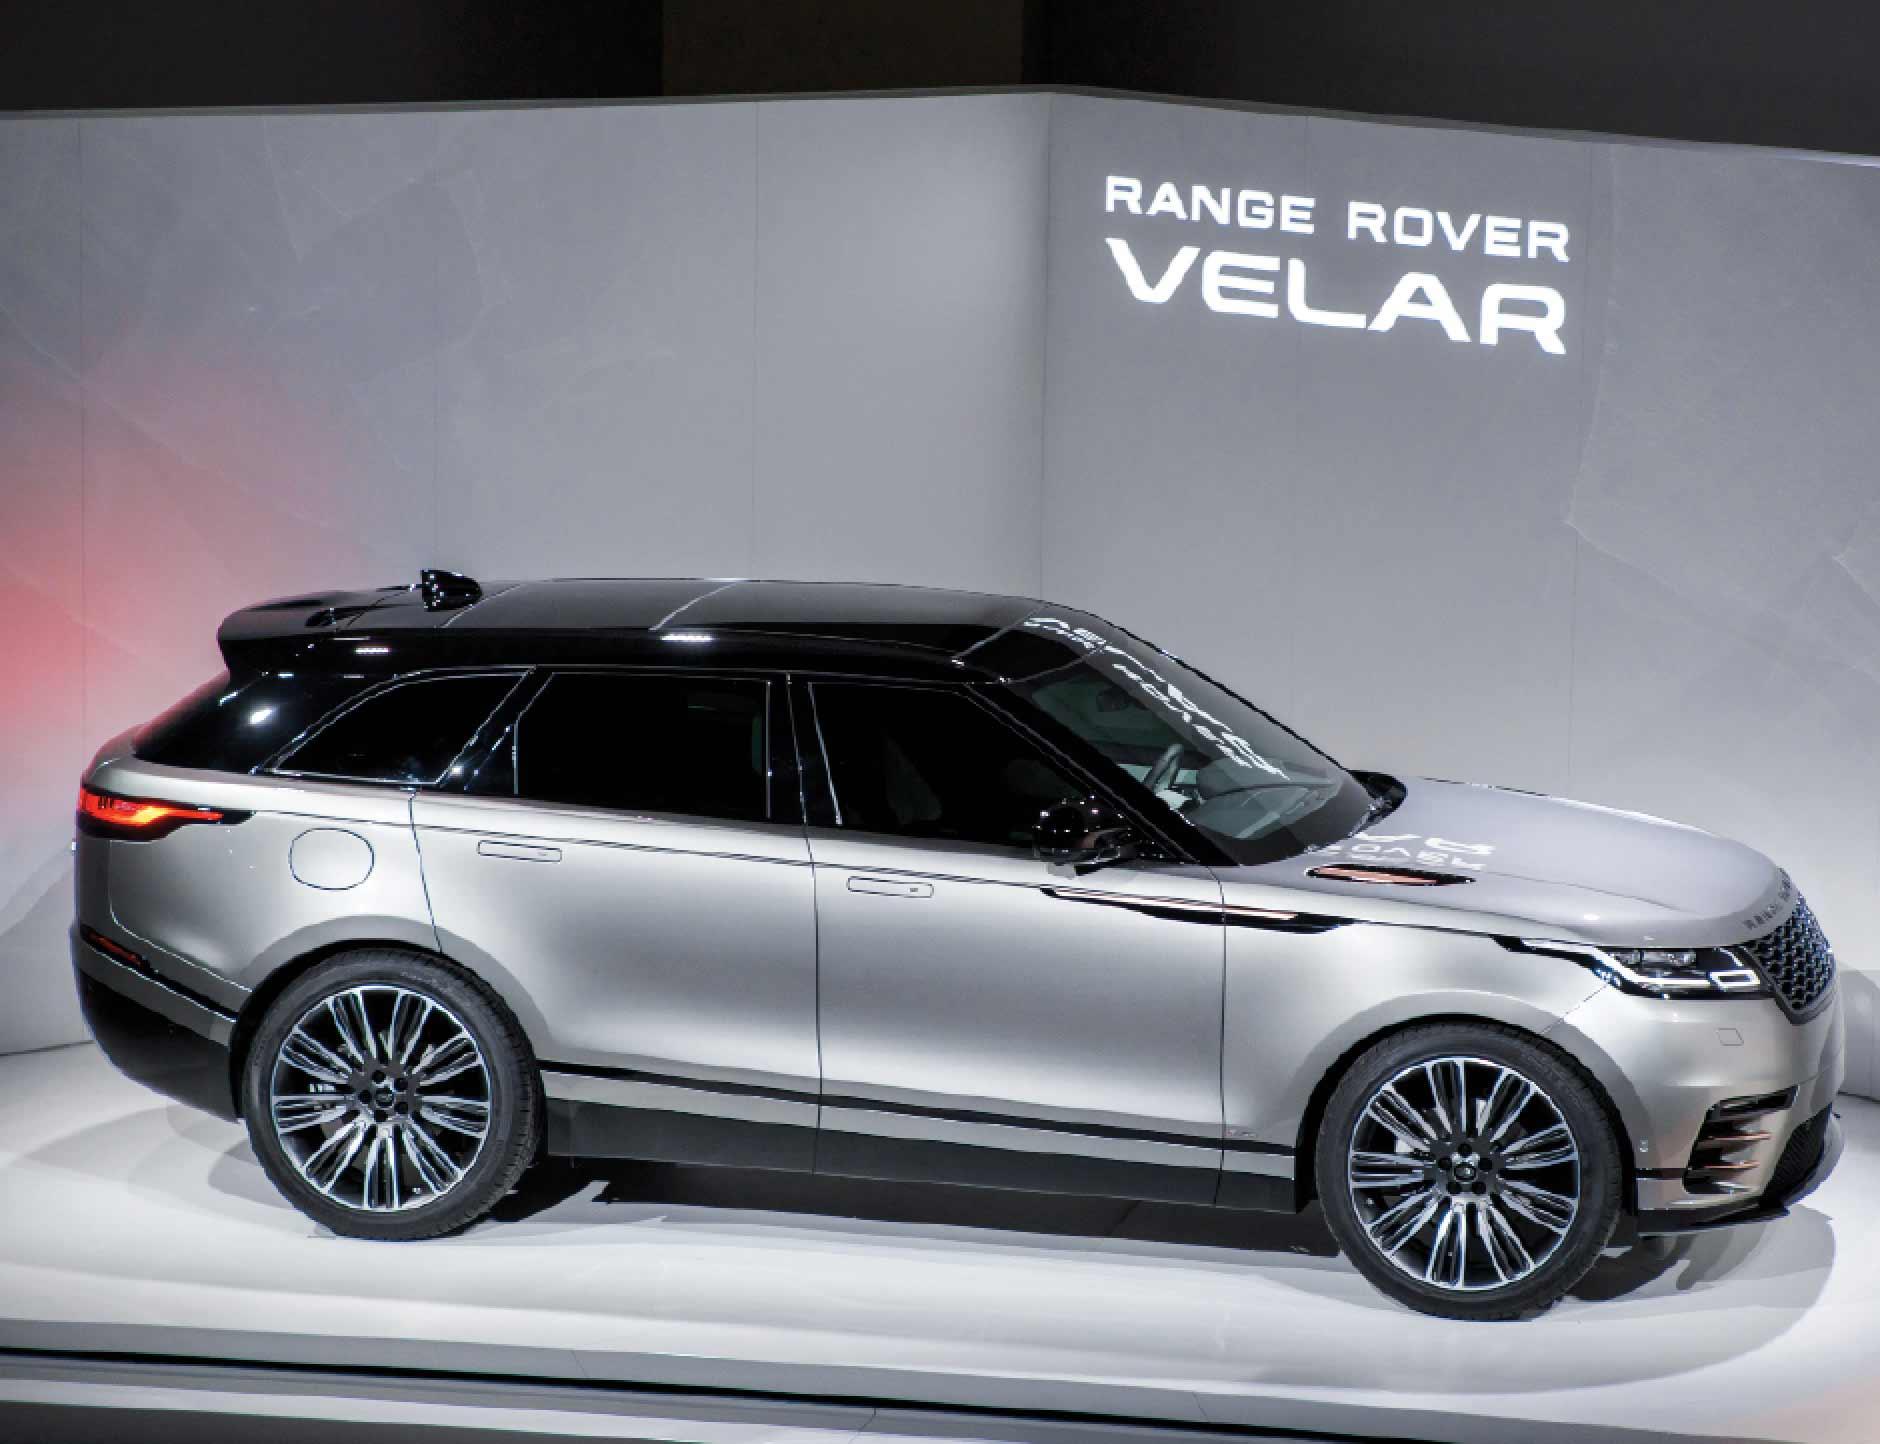 Range Rover fyller nu på sitt utbud med en fjärde modell – Velar.